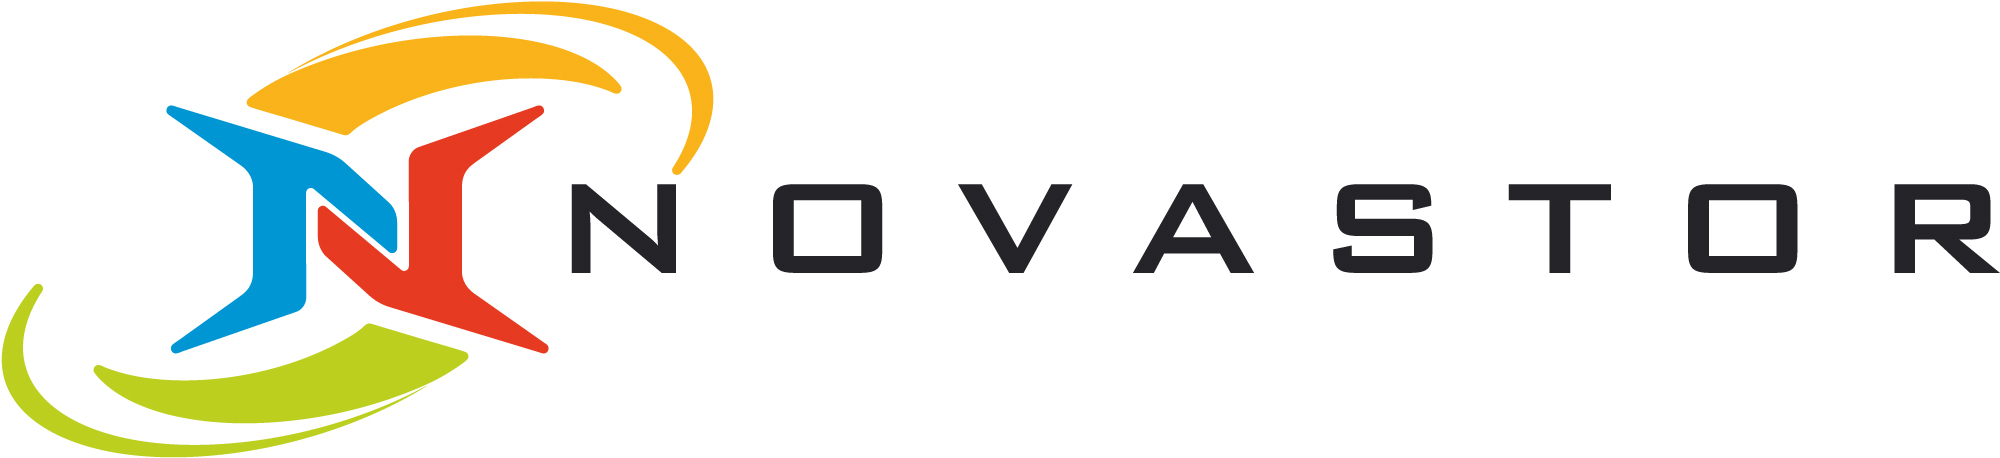 NovaStor GmbH_logo